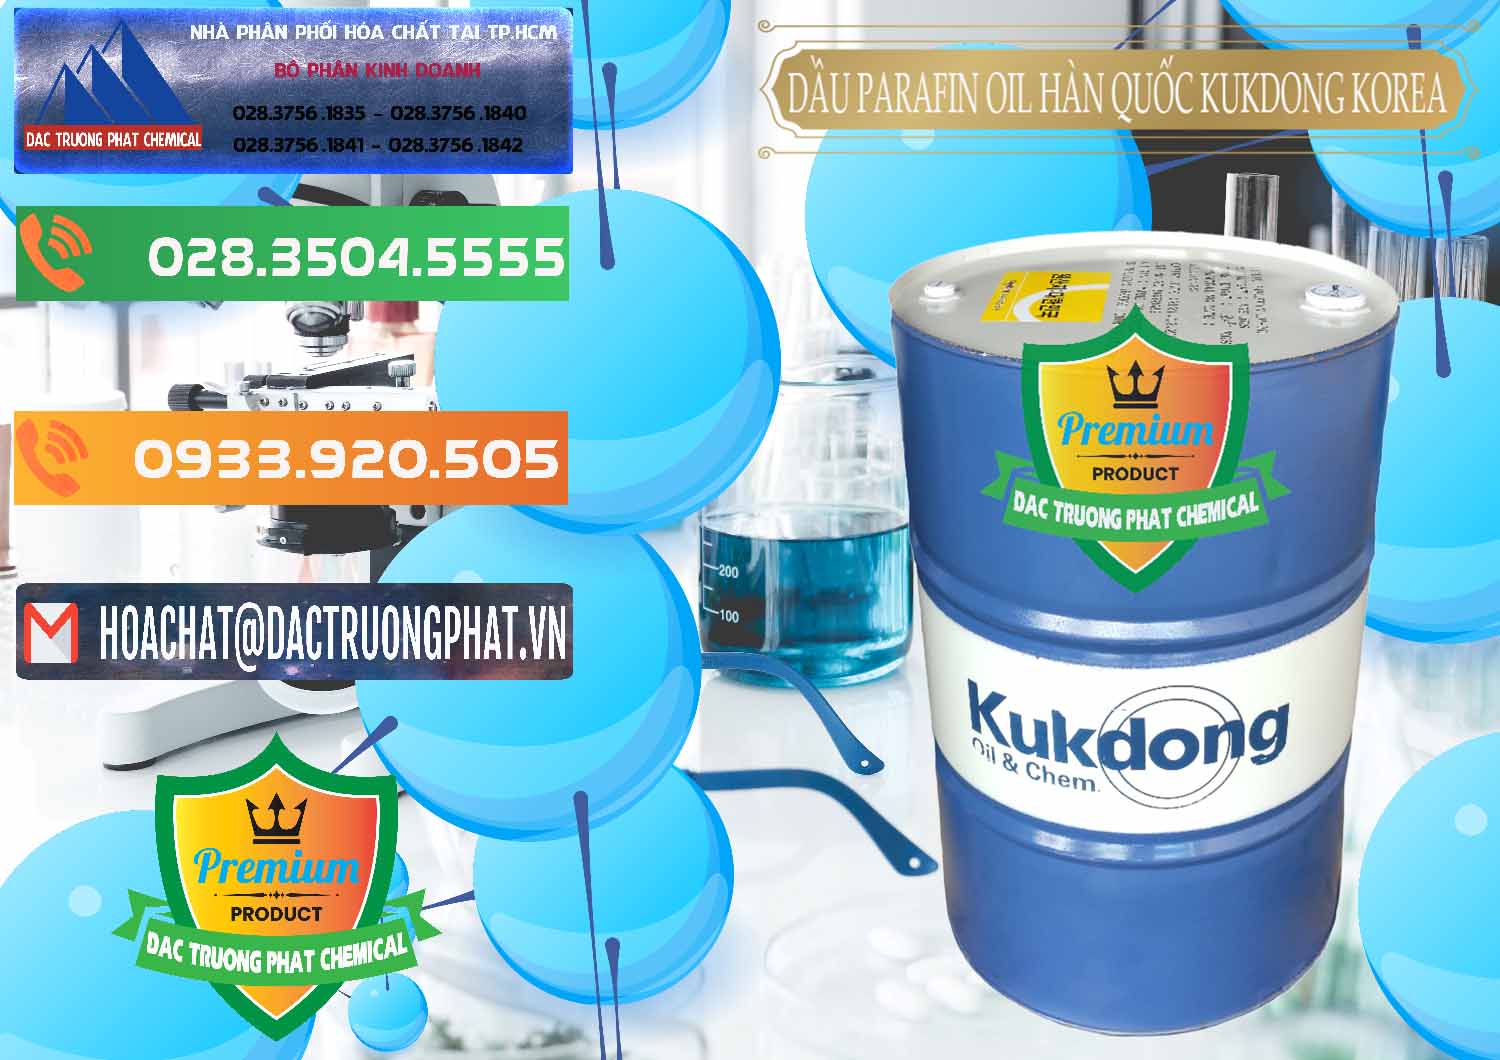 Cty chuyên bán & phân phối Dầu Parafin Oil Hàn Quốc Korea Kukdong - 0060 - Công ty phân phối & cung cấp hóa chất tại TP.HCM - hoachatxulynuoc.com.vn